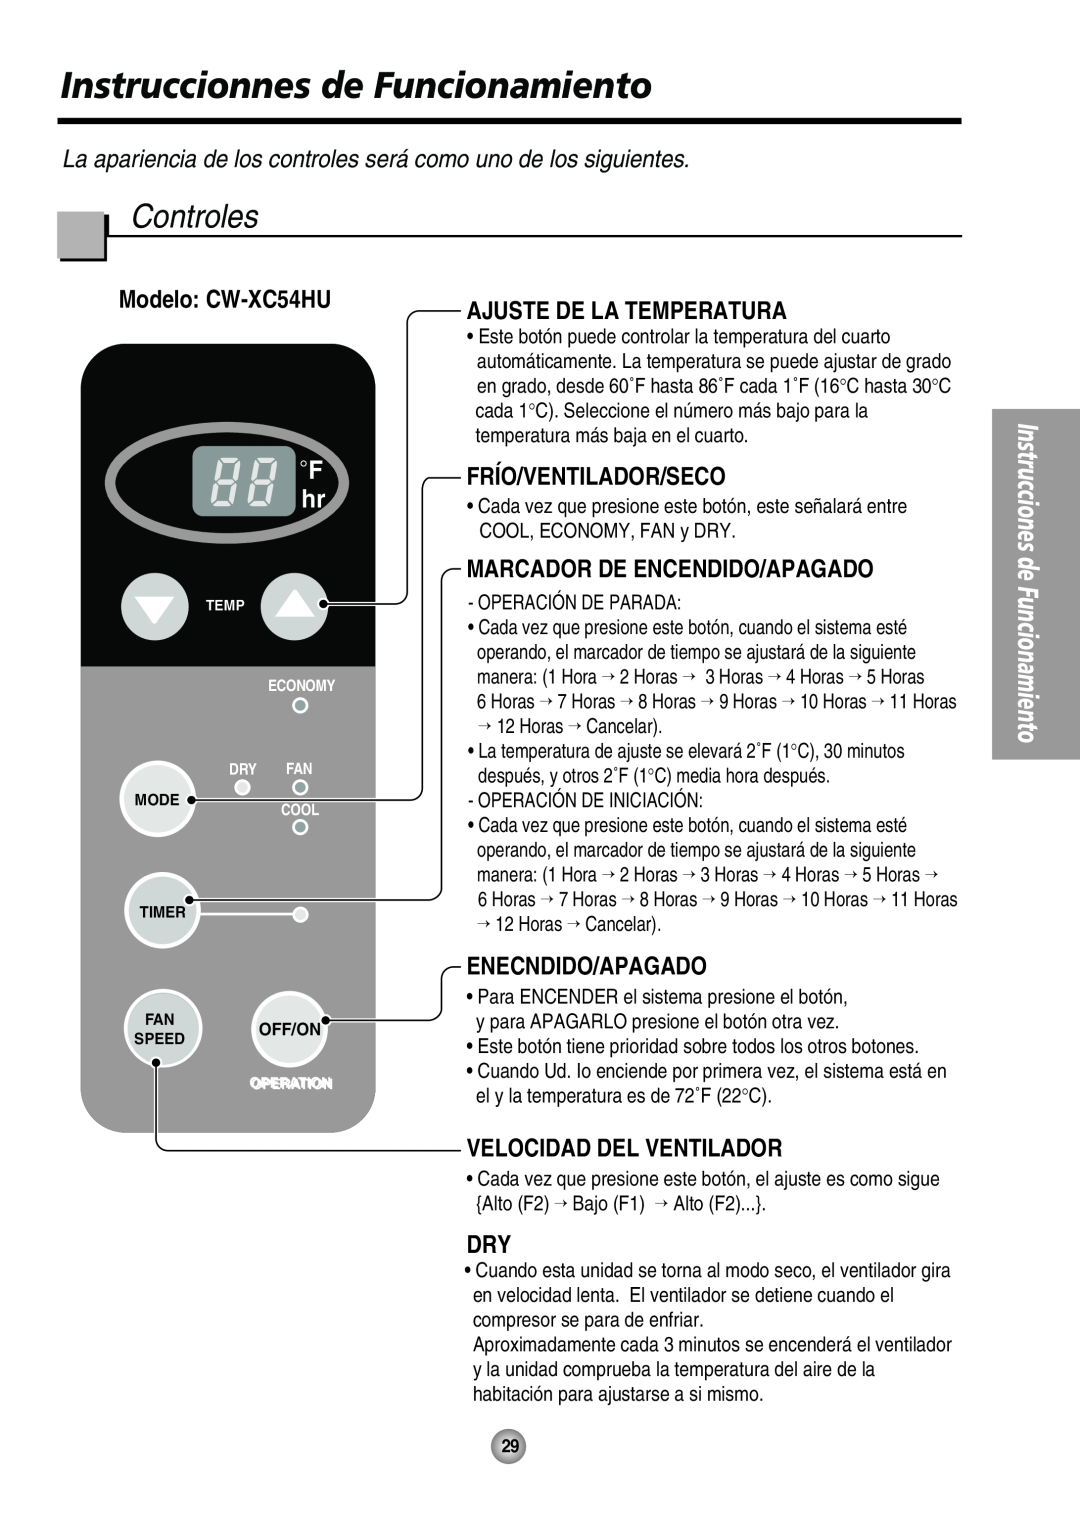 Panasonic CW-XC54HK Instruccionnes de Funcionamiento, Controles, Modelo CW-XC54HU, Frío/Ventilador/Seco, Enecndido/Apagado 